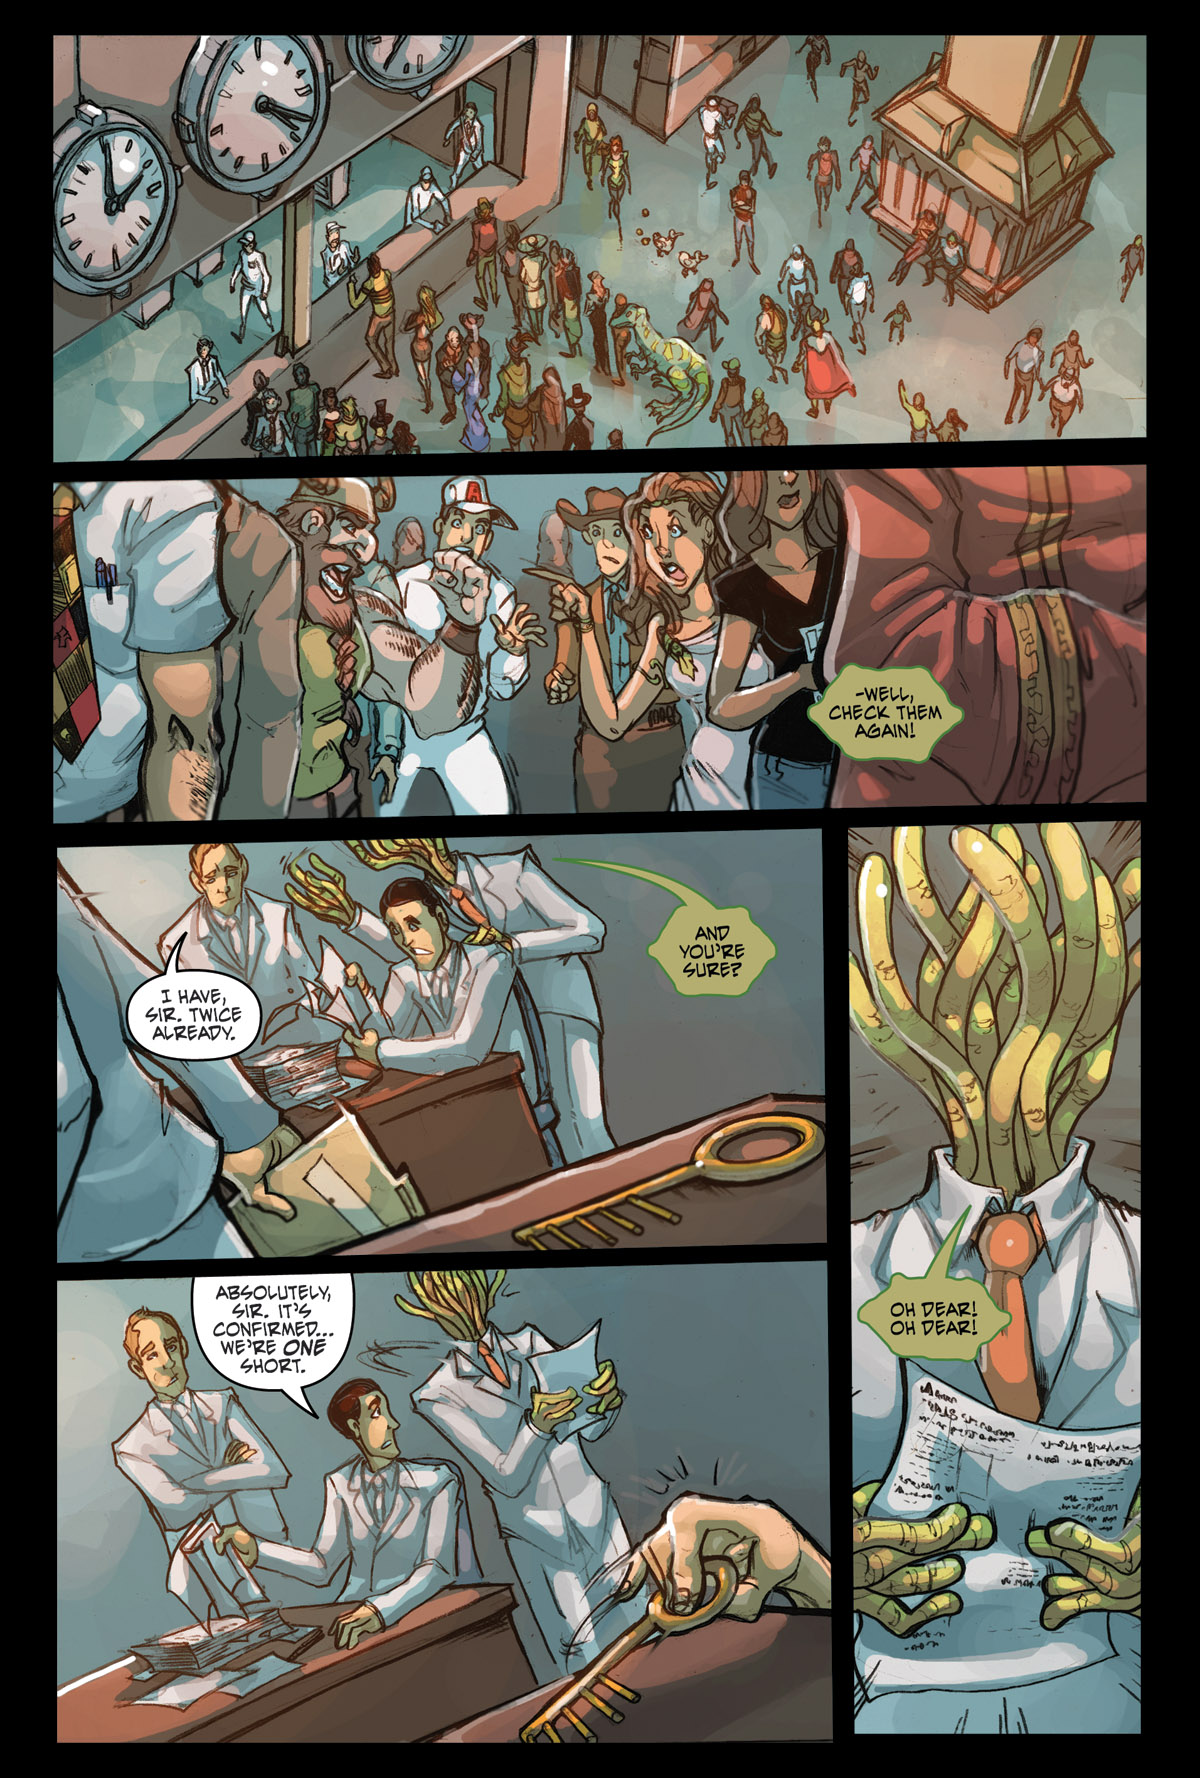 Afterlife Inc. | Wonderland | Page 2